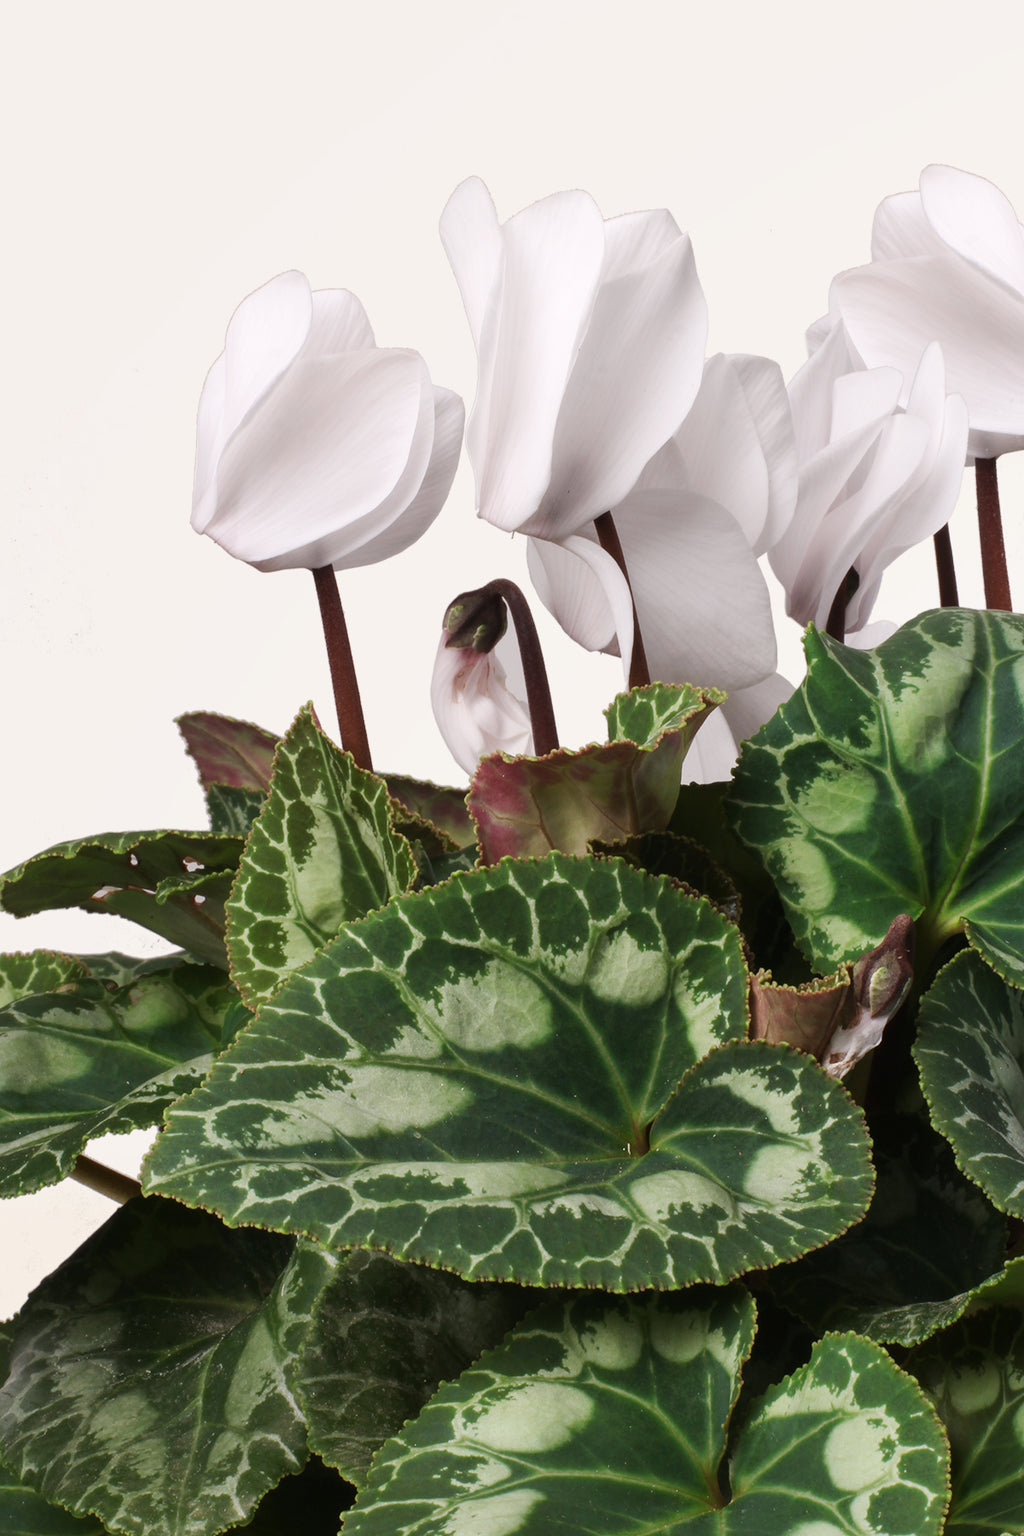 Comprar Cyclamen Blanco online | April Plants | APRILPLANTS